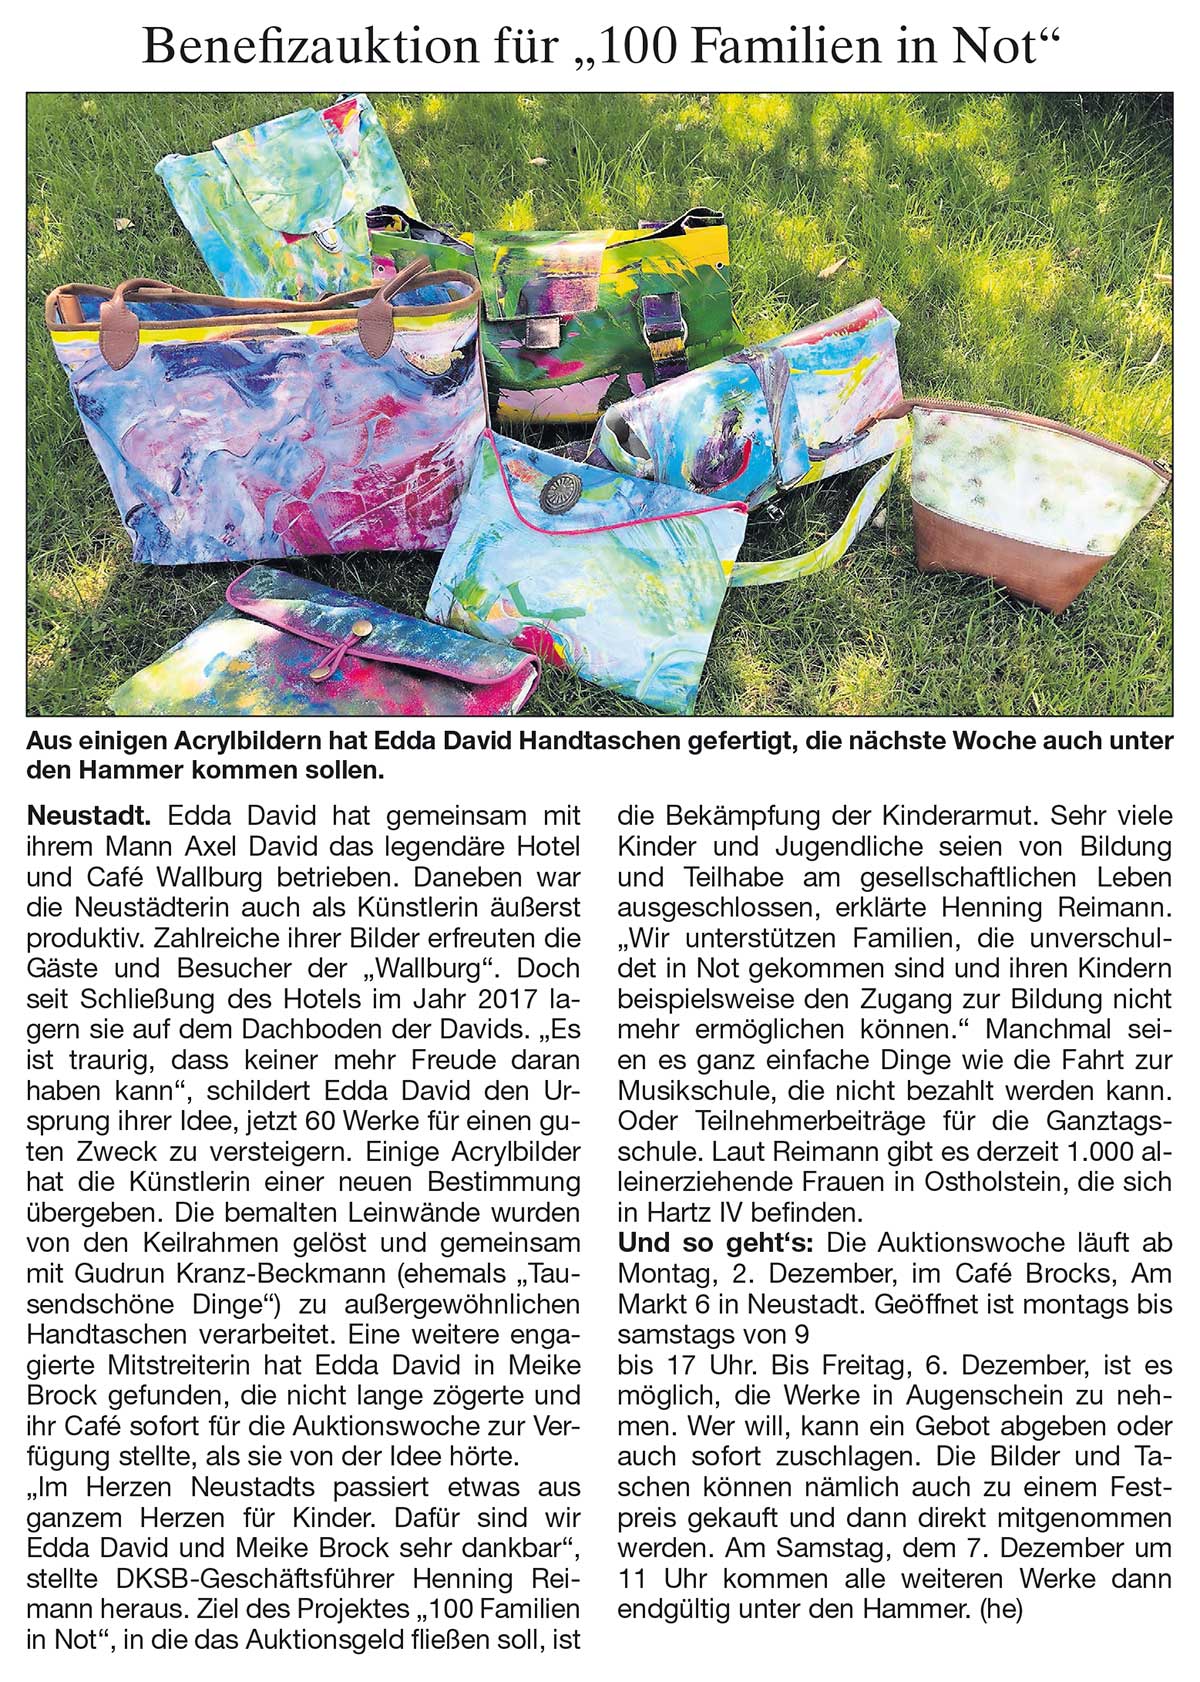 Kunstauktion in Neustadt für 100 Familien in Not